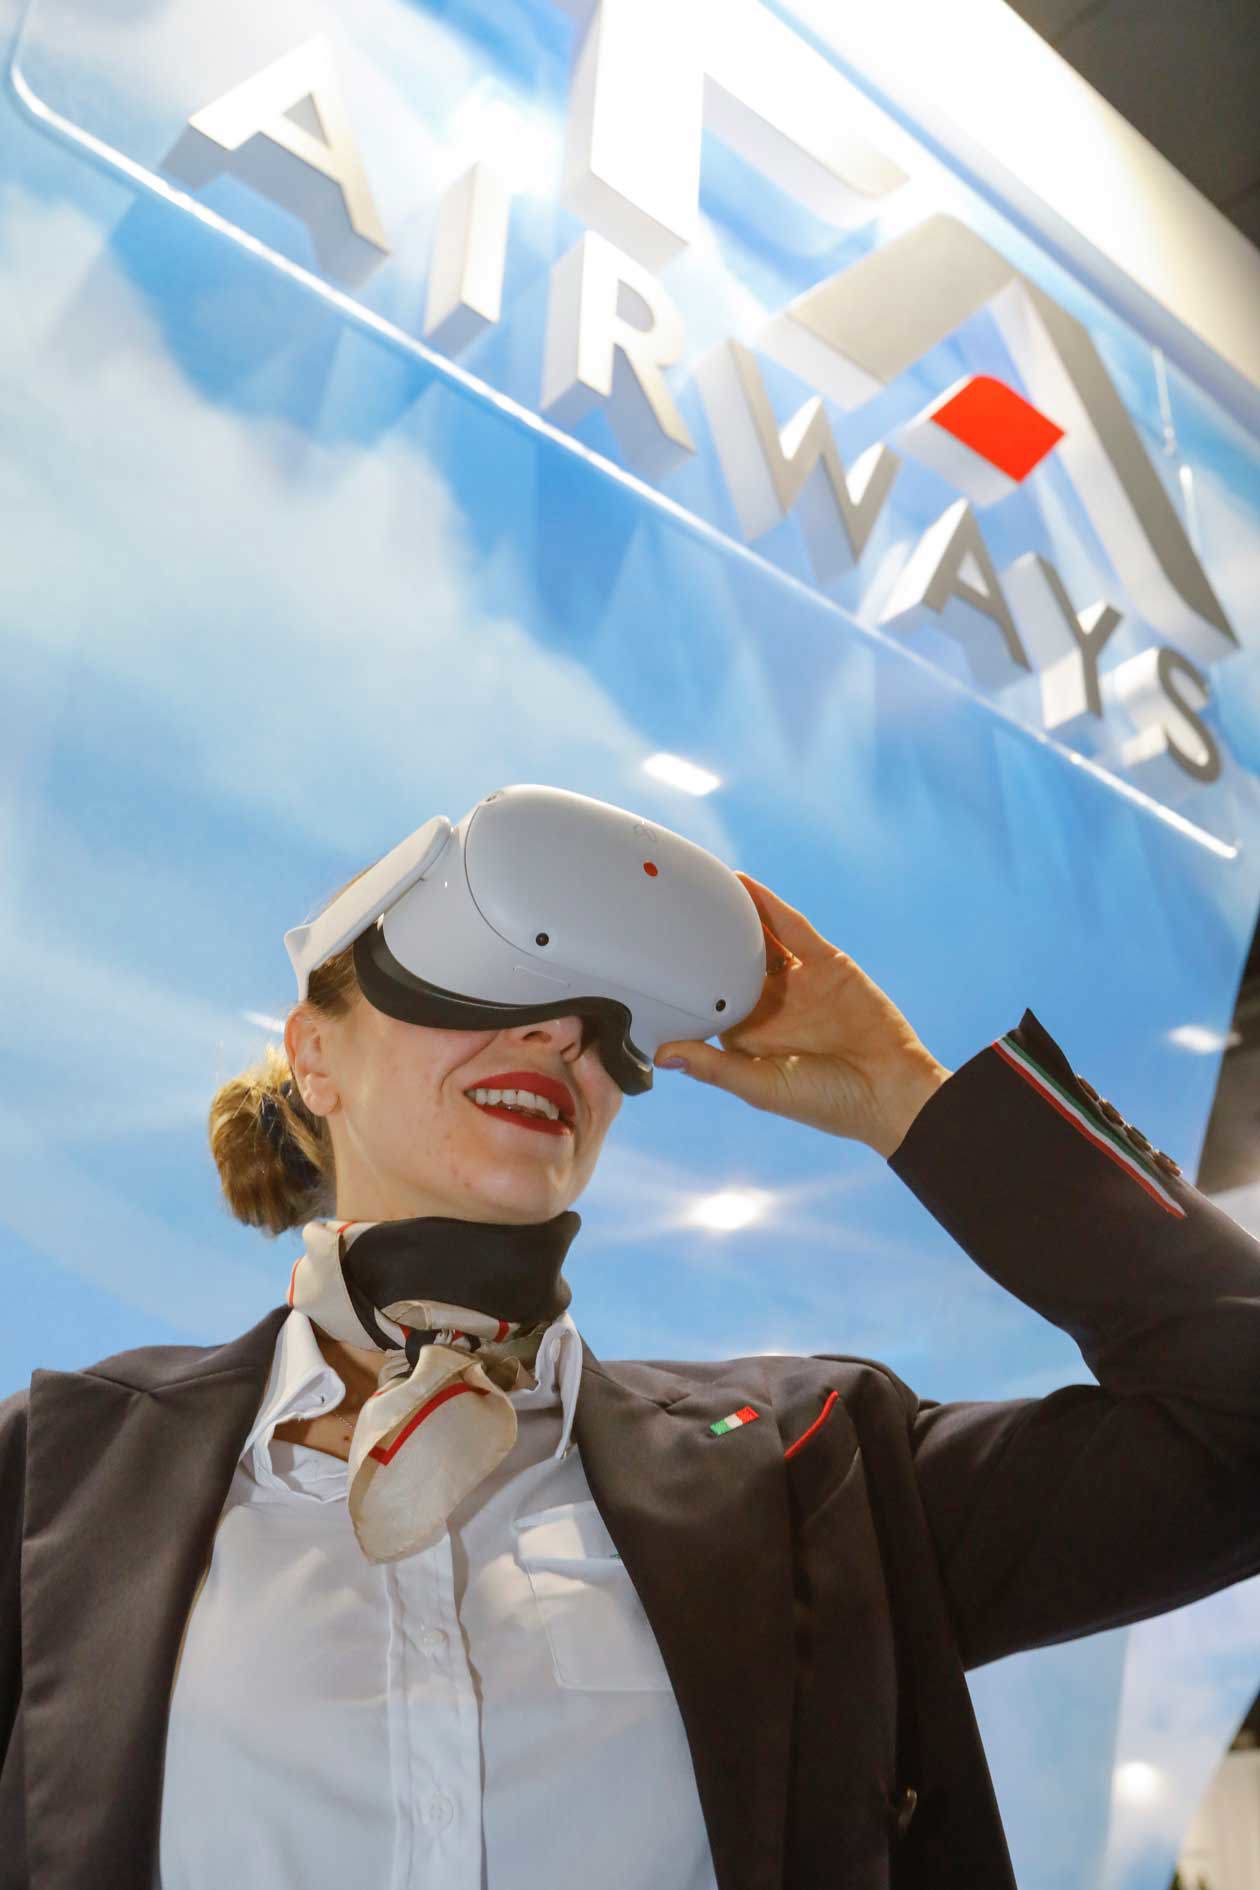 ITA Airways per la prima volta alla BIT. Nuovi visori Oculus META QUEST 2. Copyright © ITA Airways